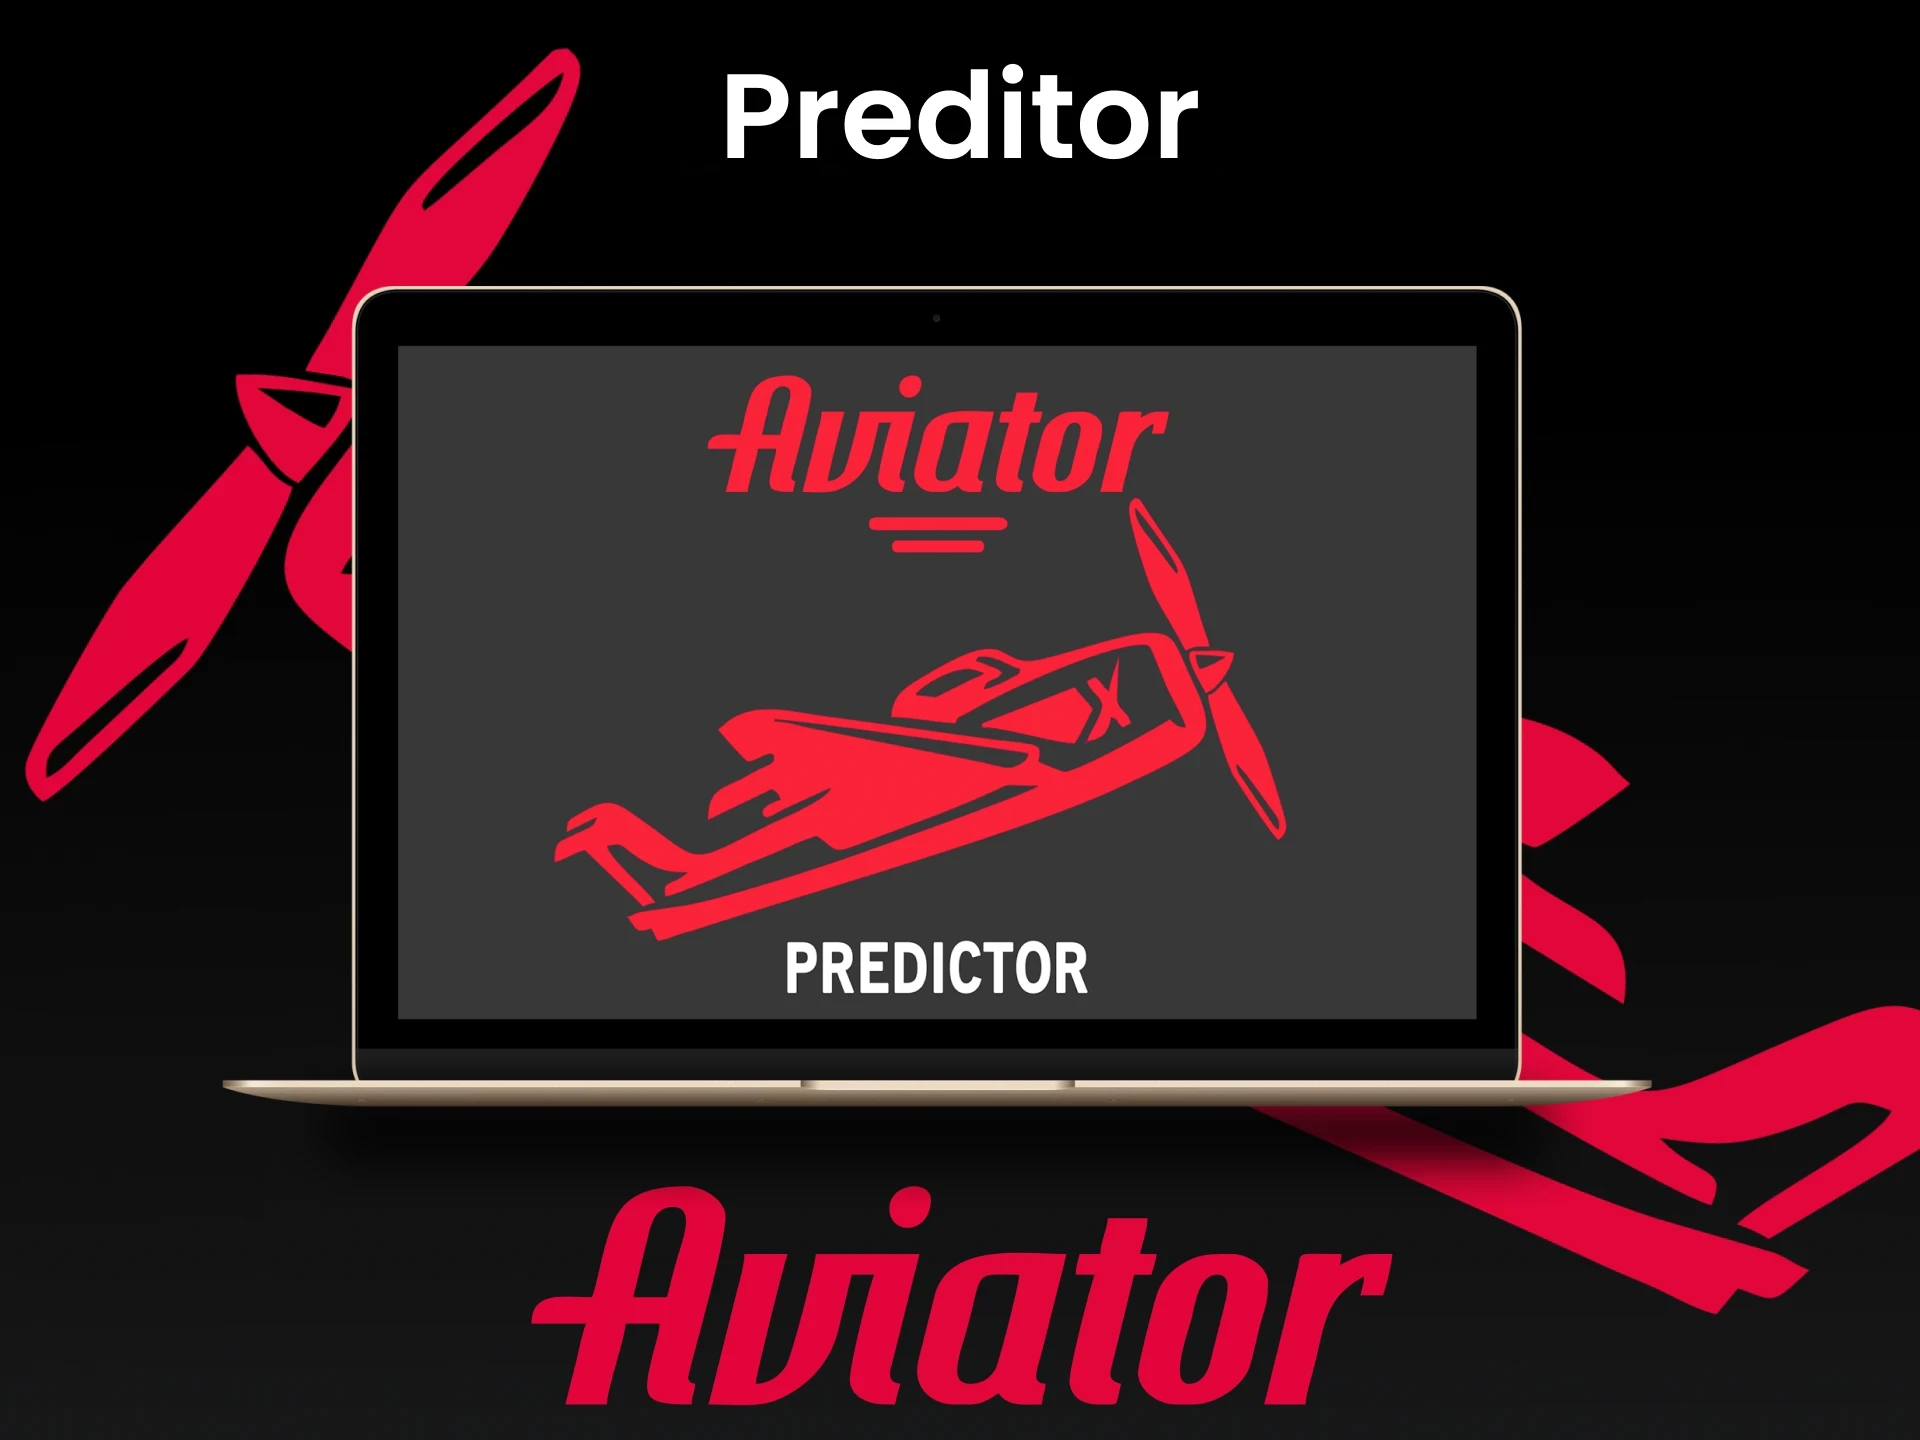 Nosso site oficial Aviator entra em detalhes sobre o Predictor.